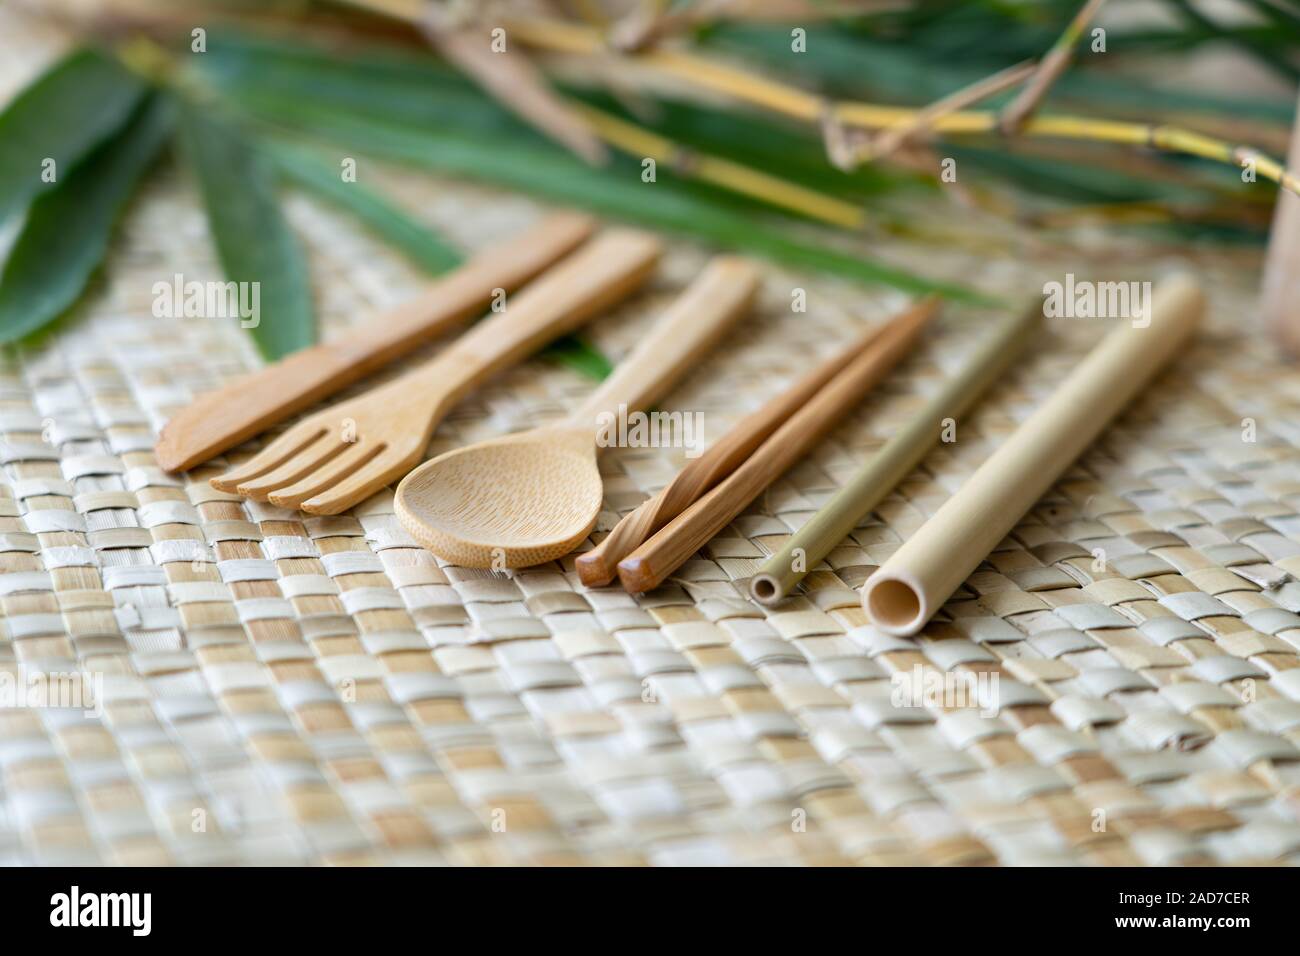 Un ensemble de couverts en bois biodégradables réalisés aux Philippines à partir de sources en bambou durable. Banque D'Images